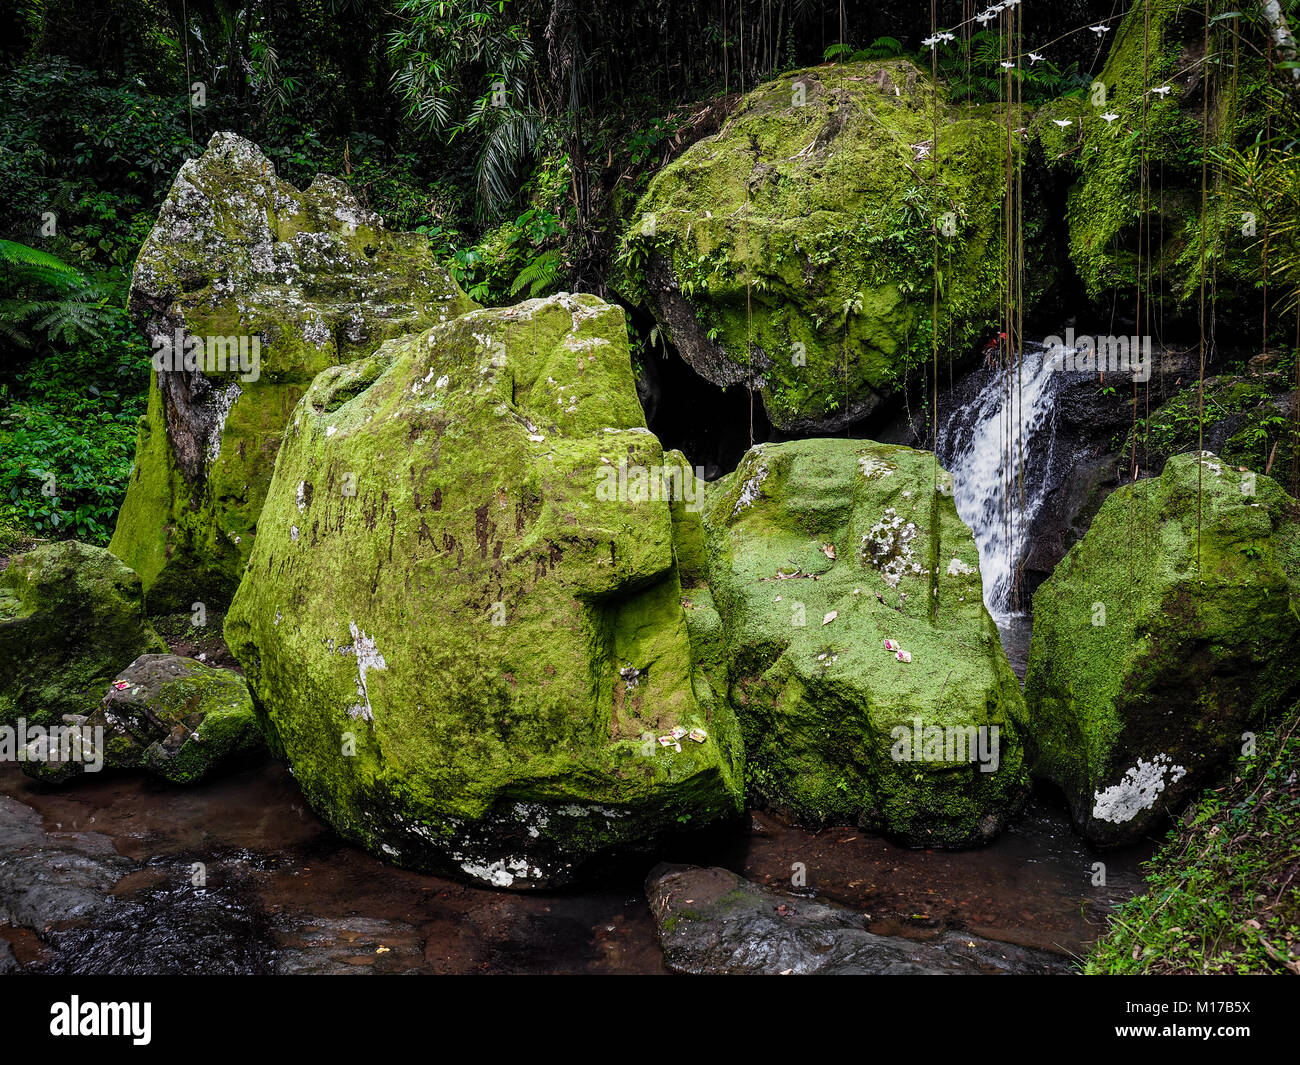 Green Moss Patches auf großen Felsen. Moos bedeckt riesigen Steinen in einem alten tropischen Wald. Konzept der Harmonie. Natur Balance. Ruhe Stockfoto